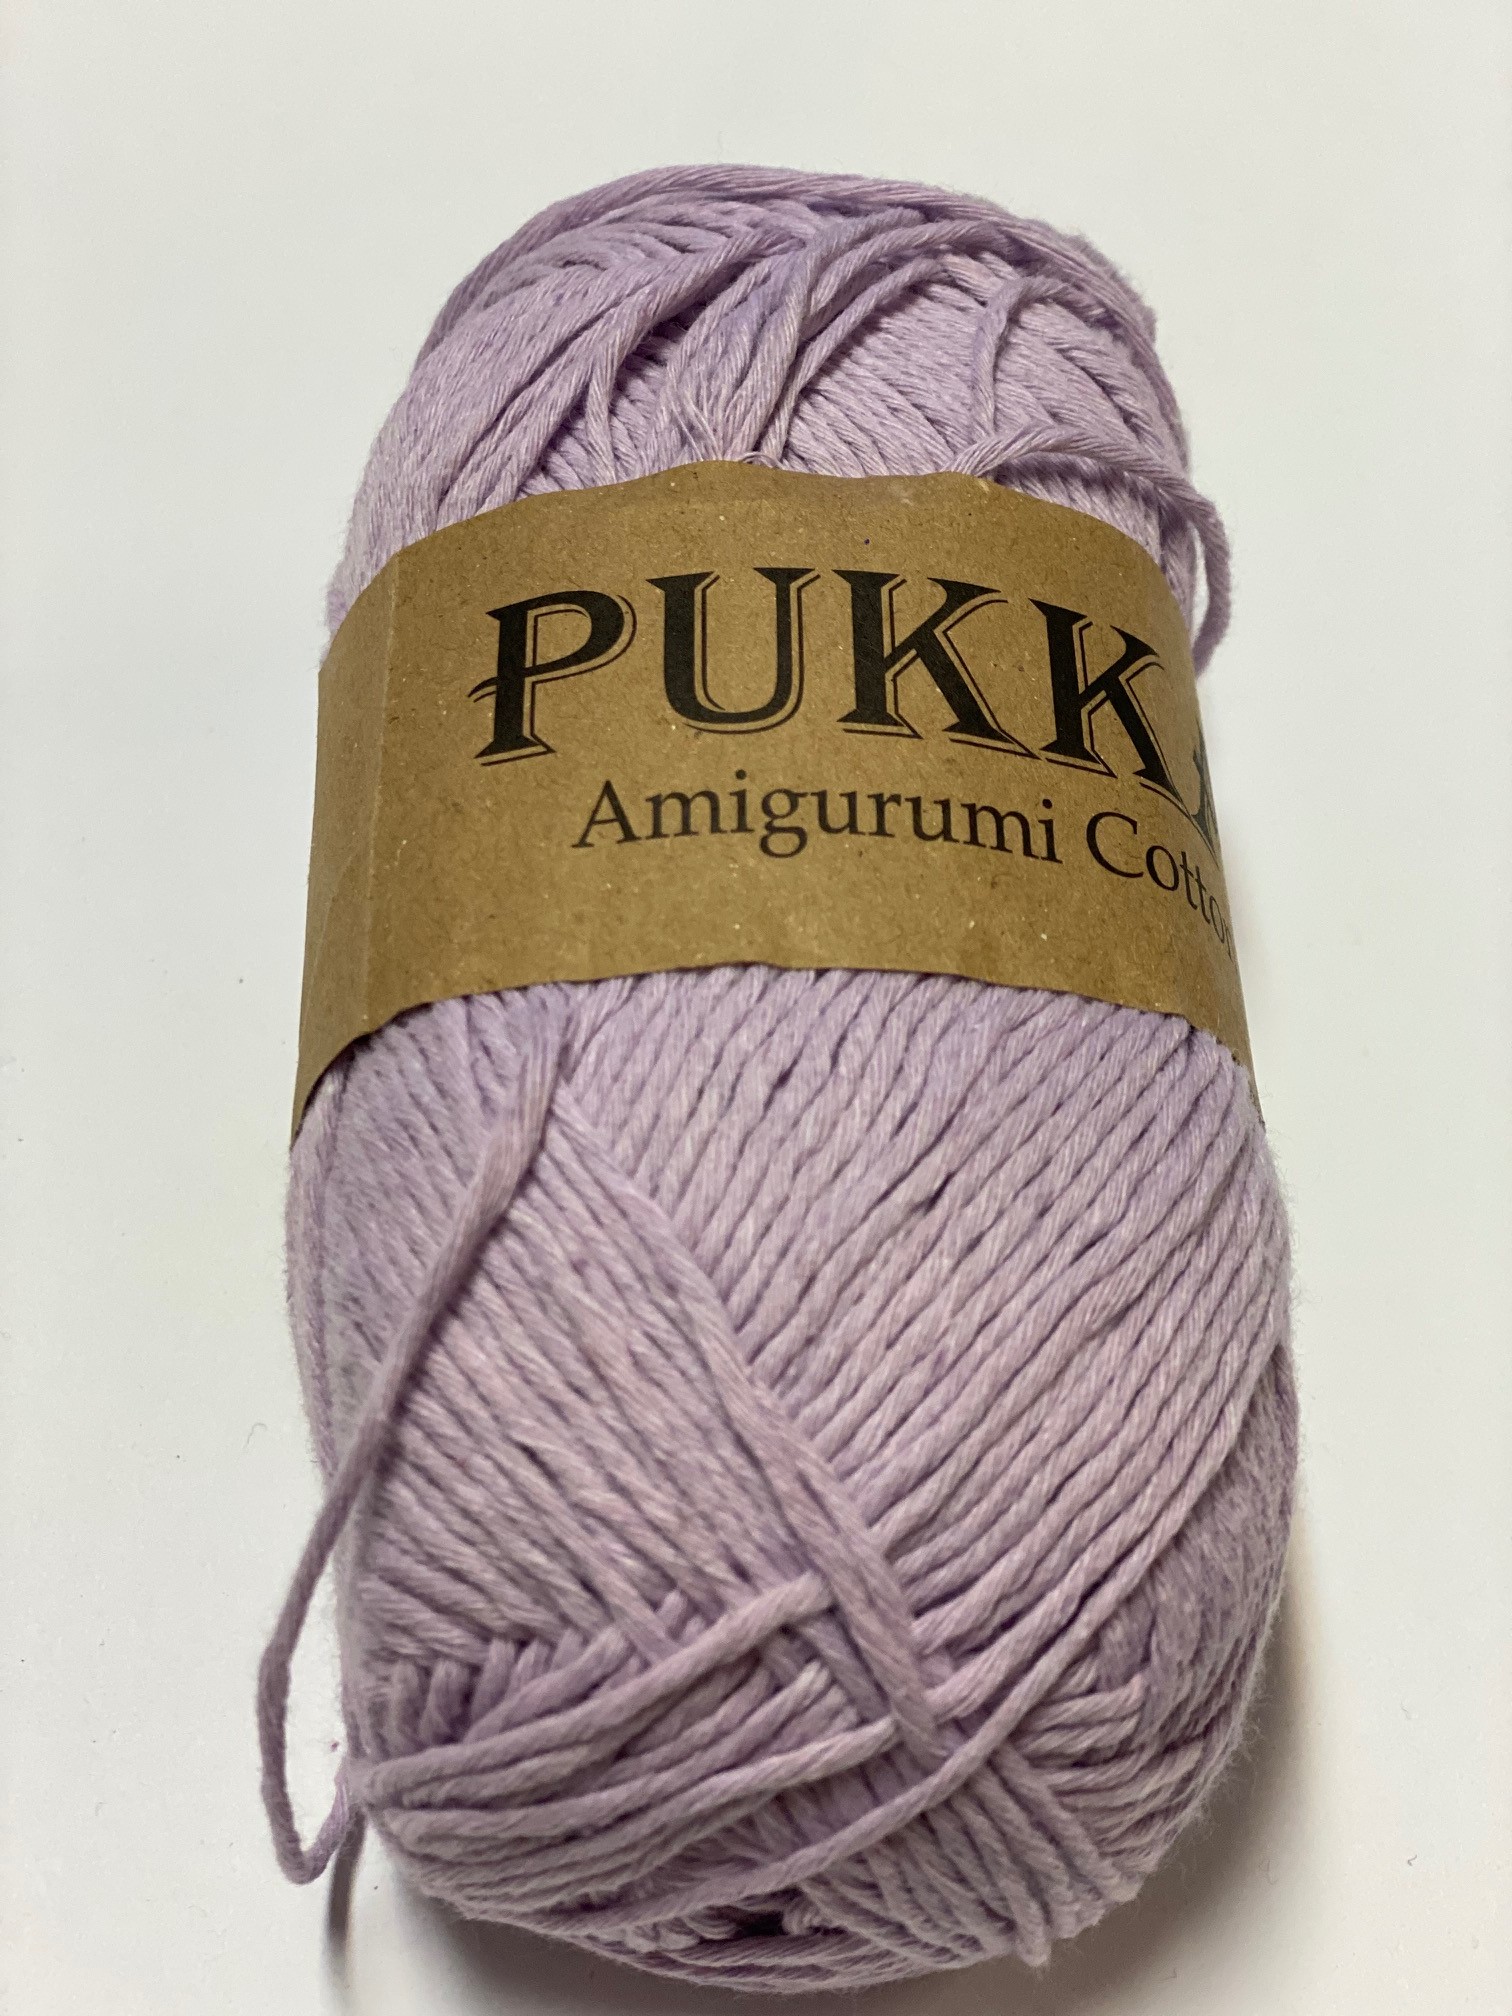 PUKKA Amigurumi Cotton 5x100g,8716